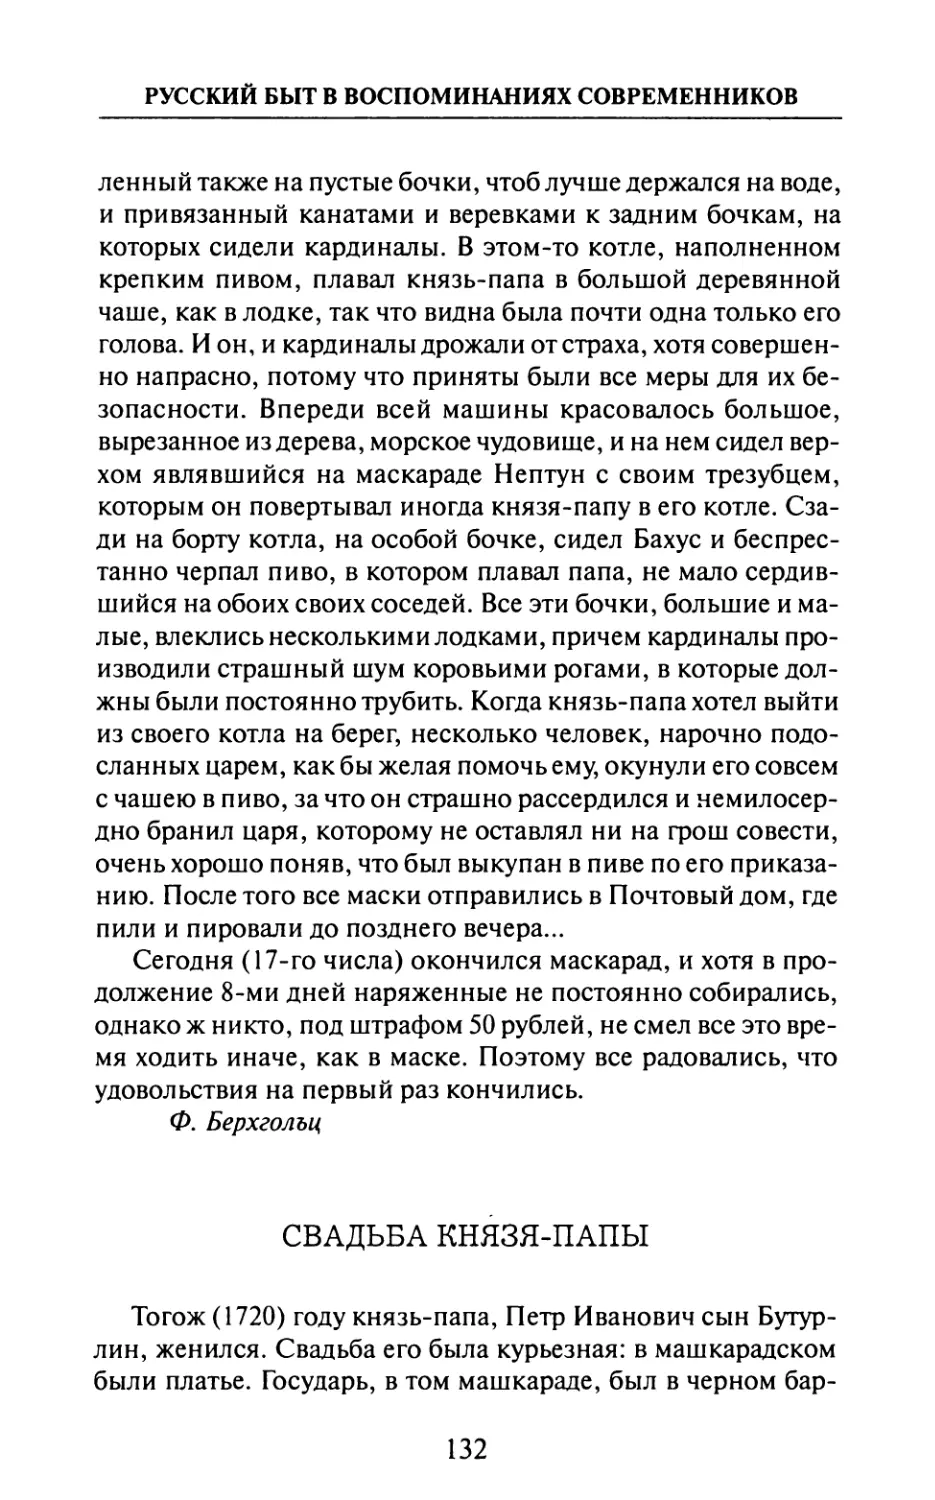 Свадьба  князя-папы  —  В.  Нащокин.  «Записки».  «Русский Архив».,  1883  г